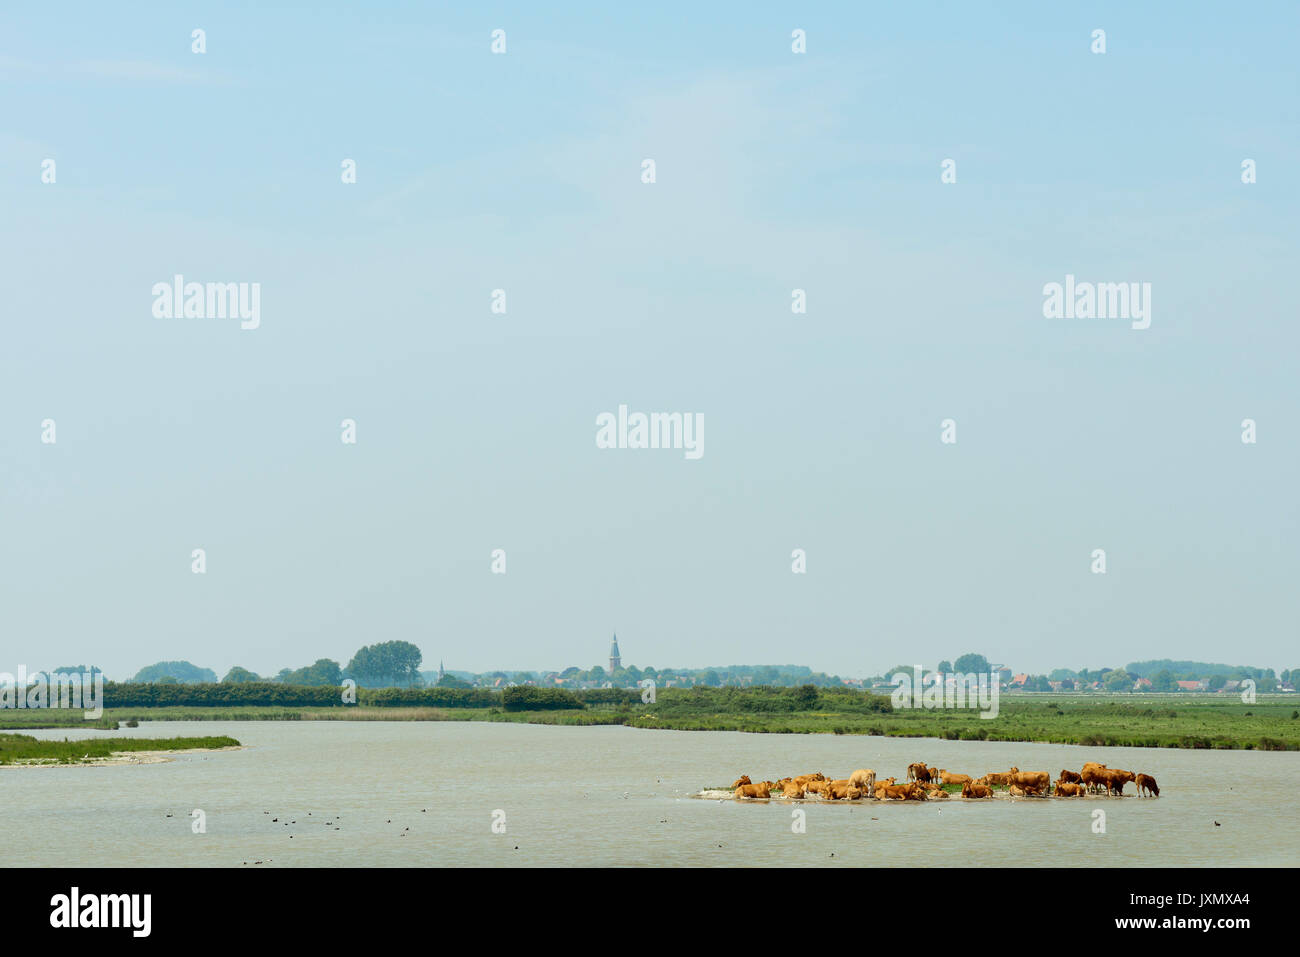 Rebaño de vacas descansan sobre un pequeño banco de arena en una reserva natural, Kruisdijk, Zeeland, Holanda, Europa Foto de stock